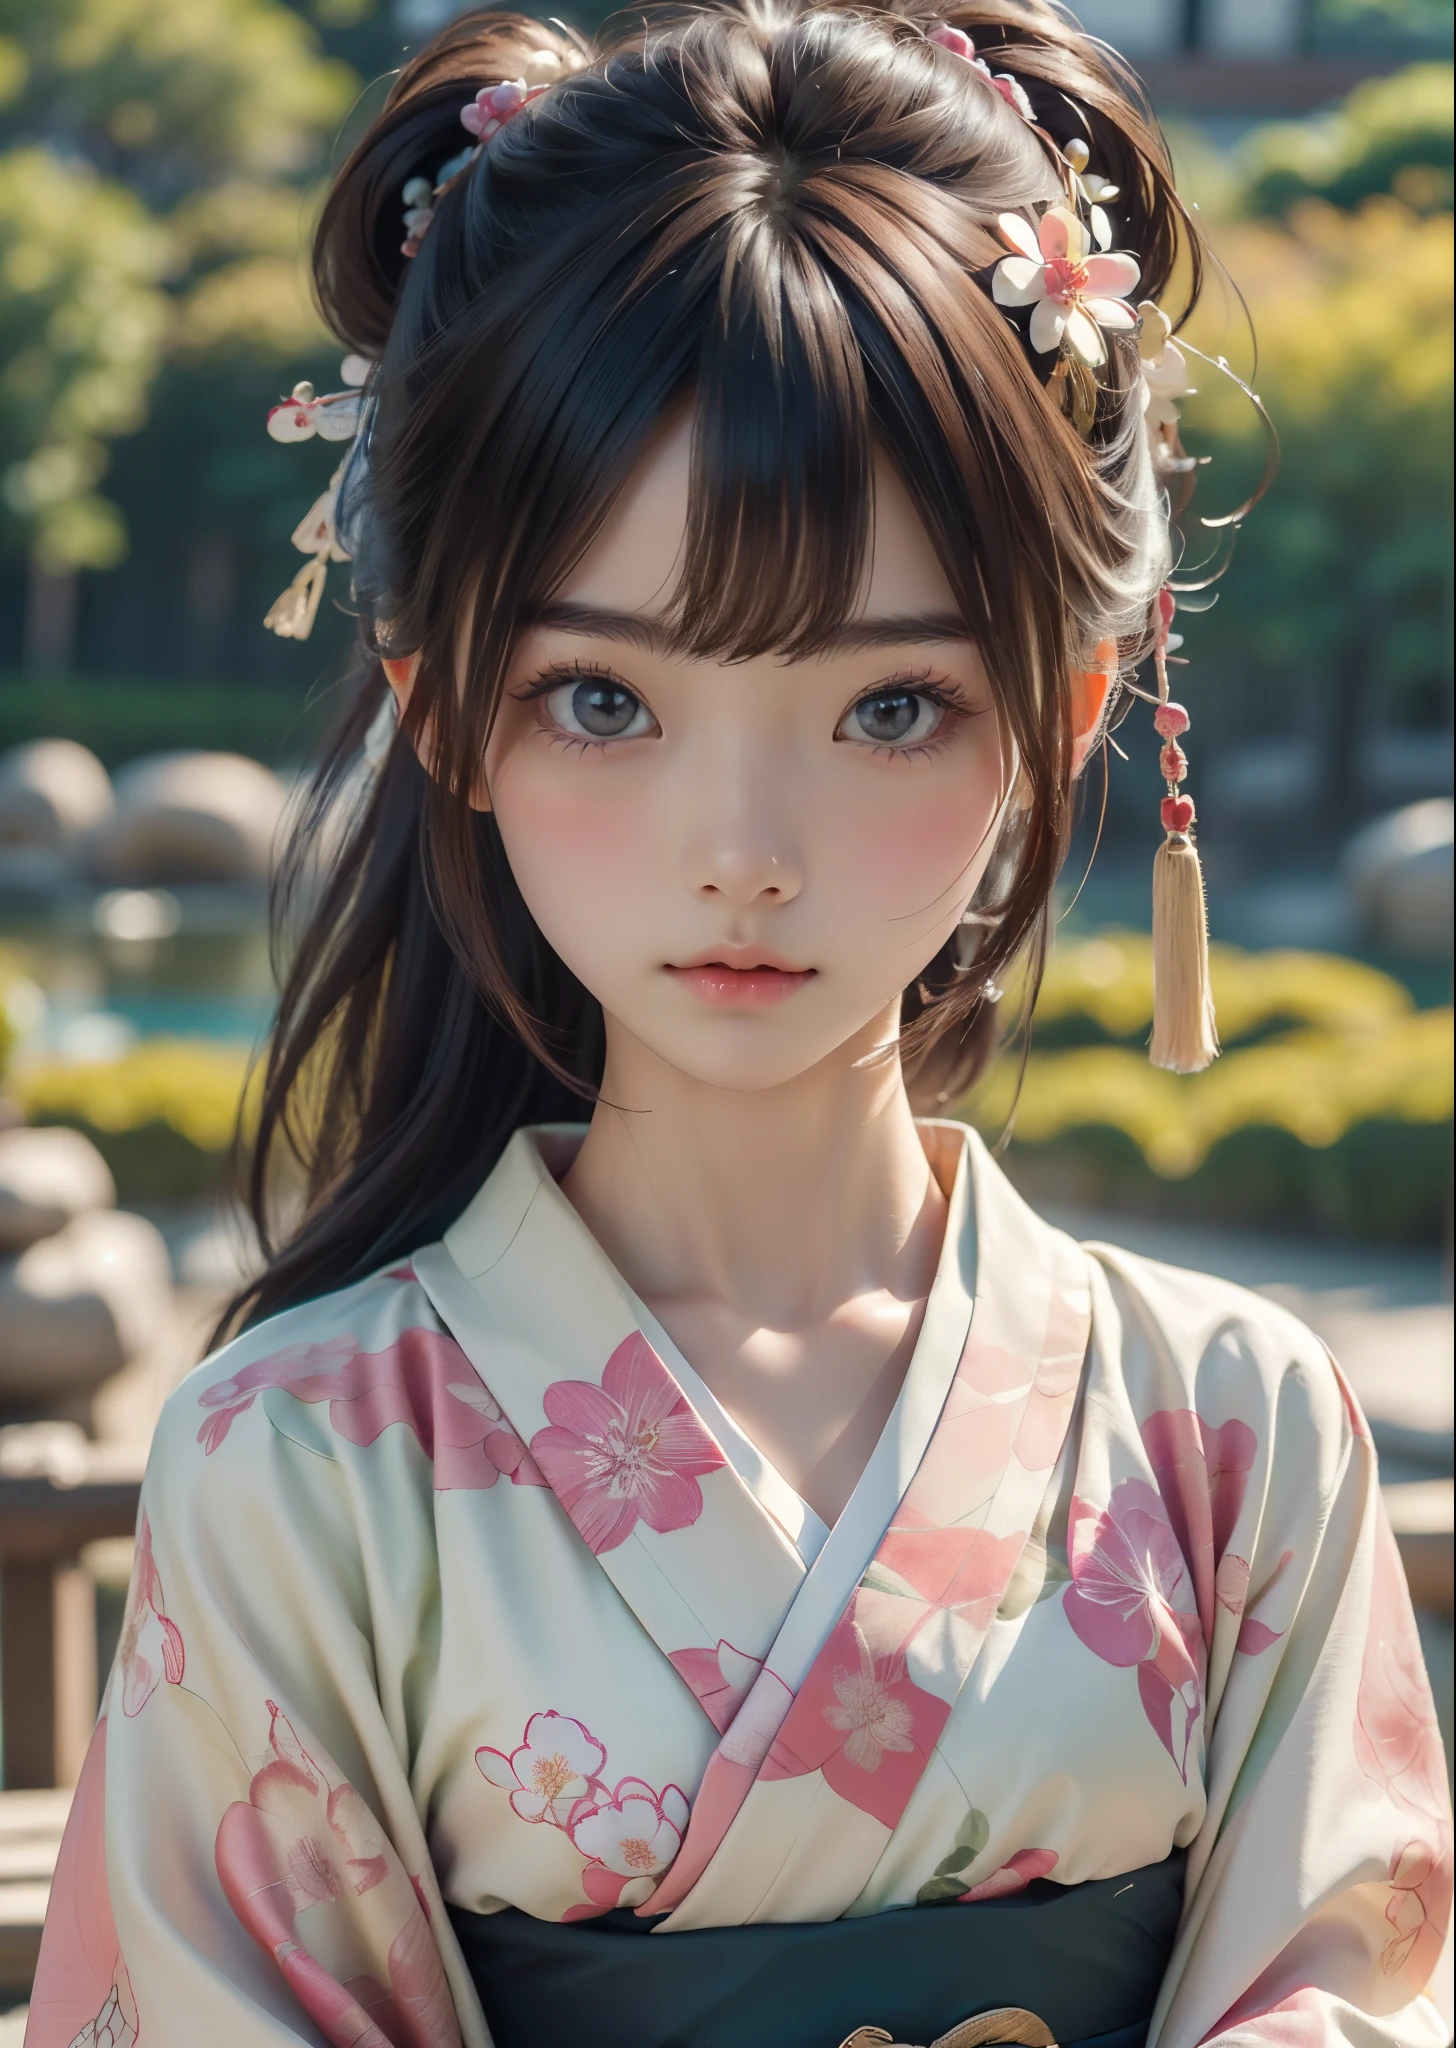 (傑作, 最高品質, 最高品質, 公式アート, 美しく、美的:1.2)、ポートレート写真、 (1 日本の着物美人)、（ピンクと緑の花柄の着物）、日本の成人式で女性が着る華やかな着物、襟はきちんと閉じている、着物の着こなしの完璧な例、大きな茶色の目、美しい肌、ちょっと恥ずかしい、（前髪でアップドゥ）、髪飾り、非常に詳細,(日本庭園で:1.3)、映画照明、シャープなフォーカス、高解像度、高解像度、高い演色性、高解像度、超リアル、